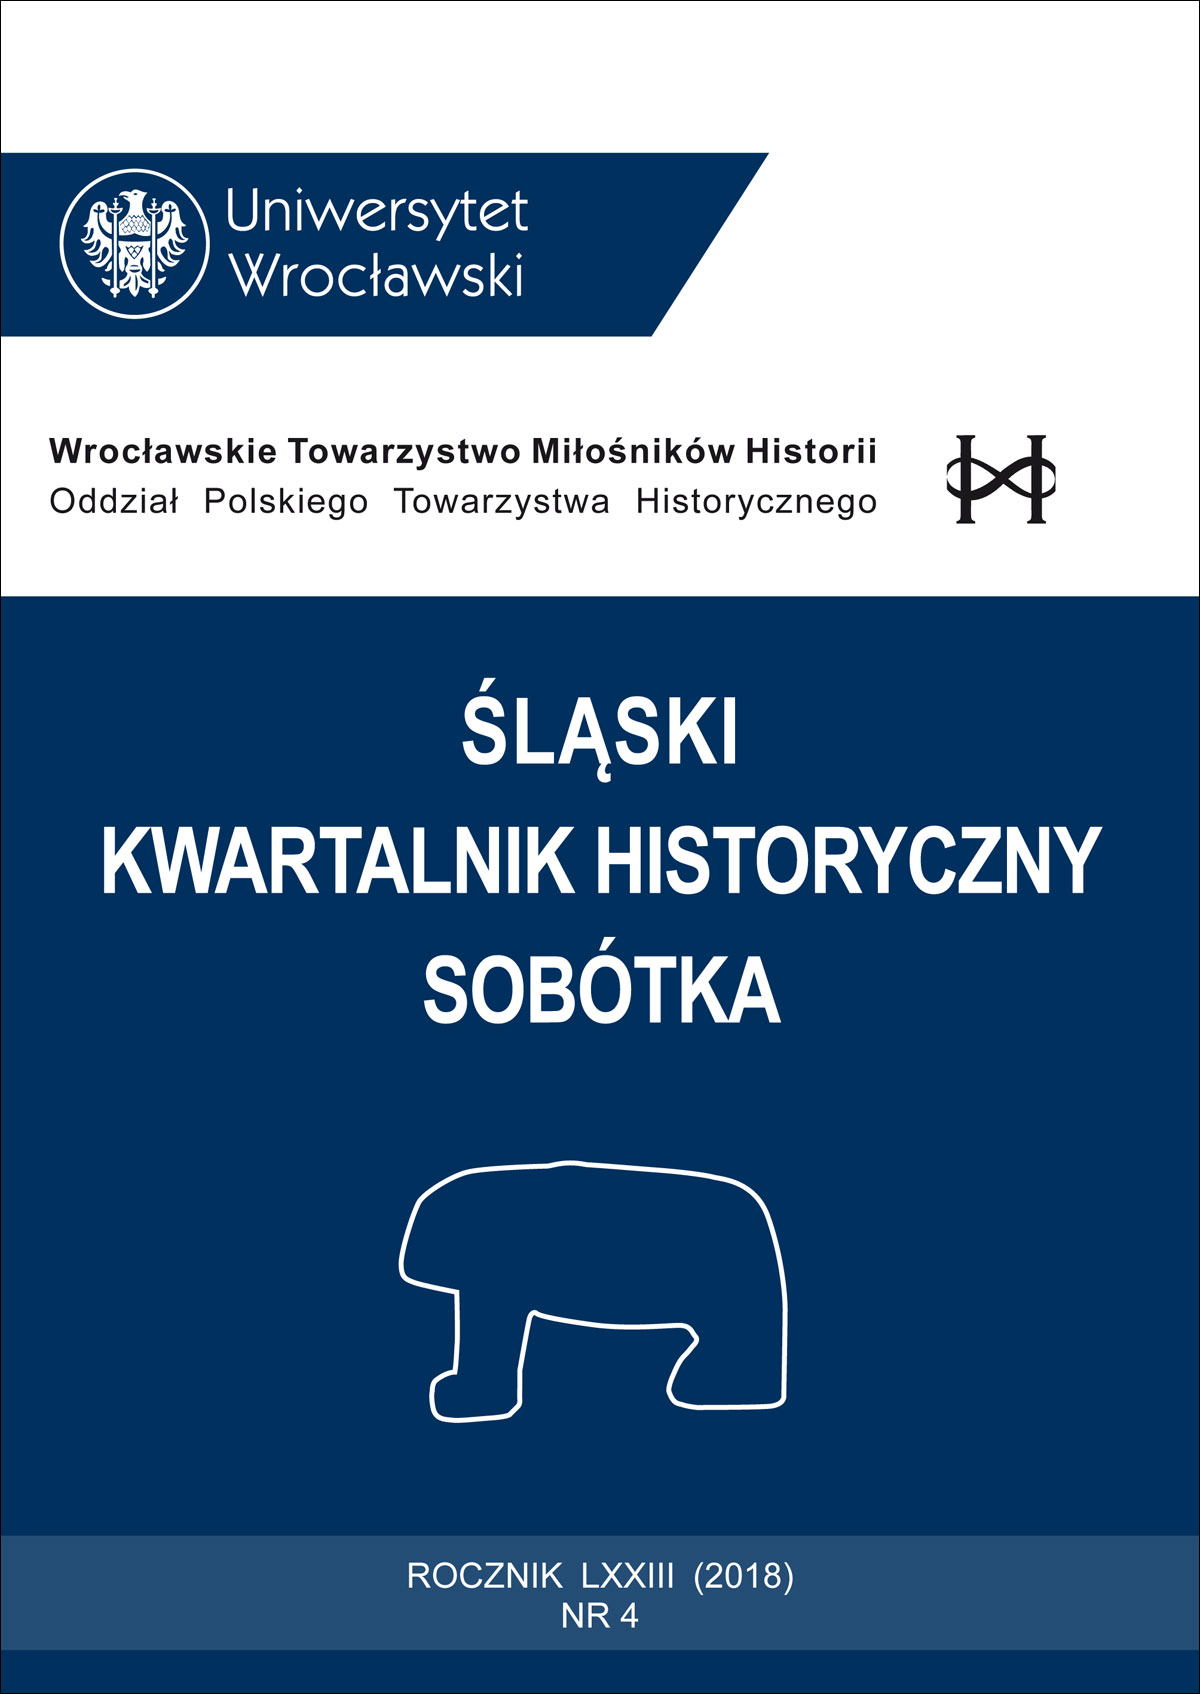 Prof. dr hab. Franciszek Biały (4 IX 1931 r. Królewska Huta/ Chorzów – 24 X 2017 r. Wrocław) Cover Image